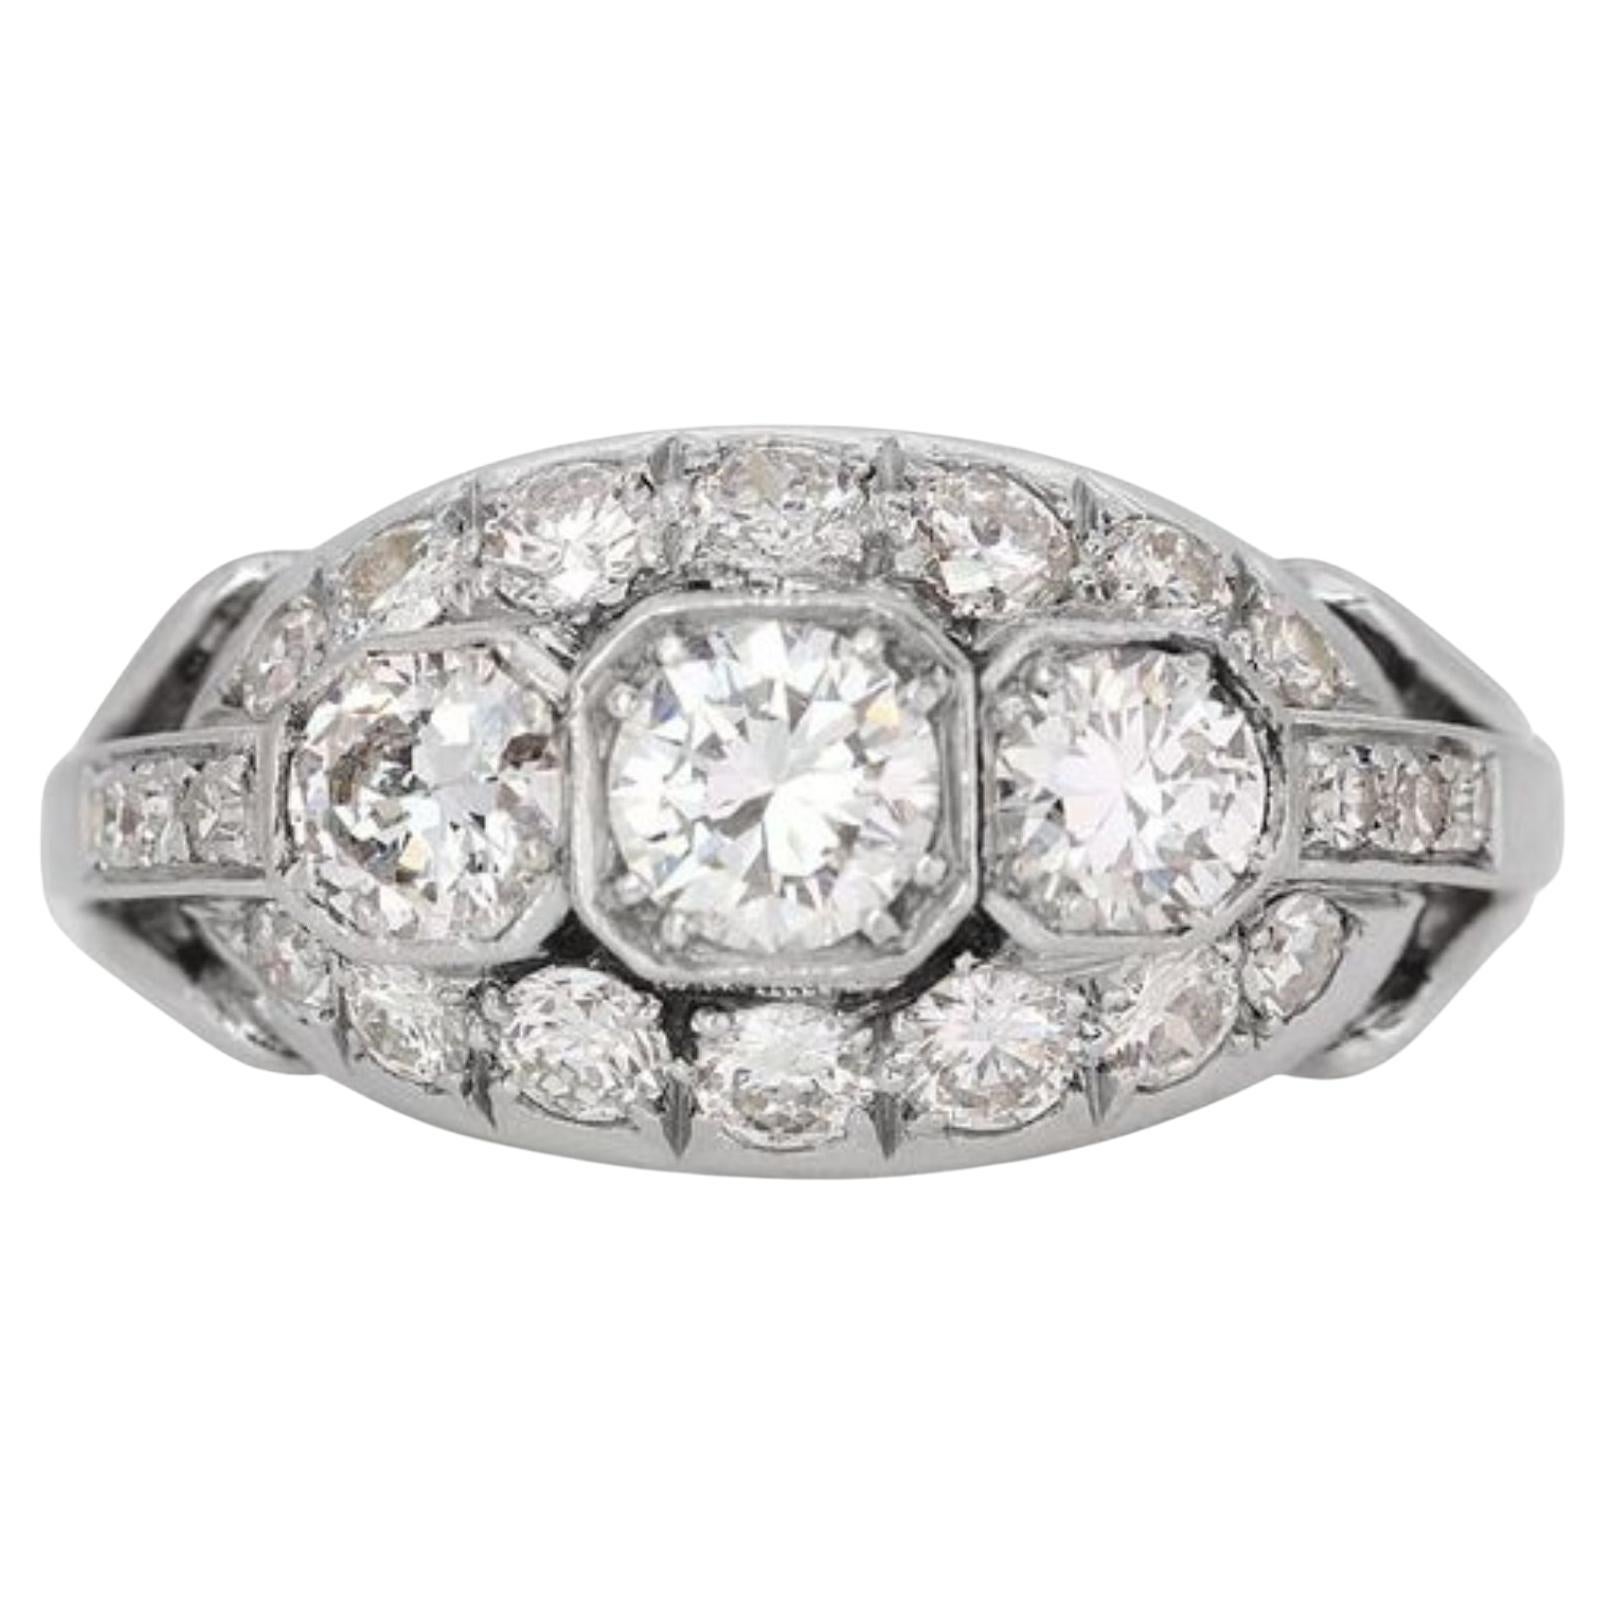 Elegant 1.50ct Diamond Platinum Ring with Radiant F Color Brilliance